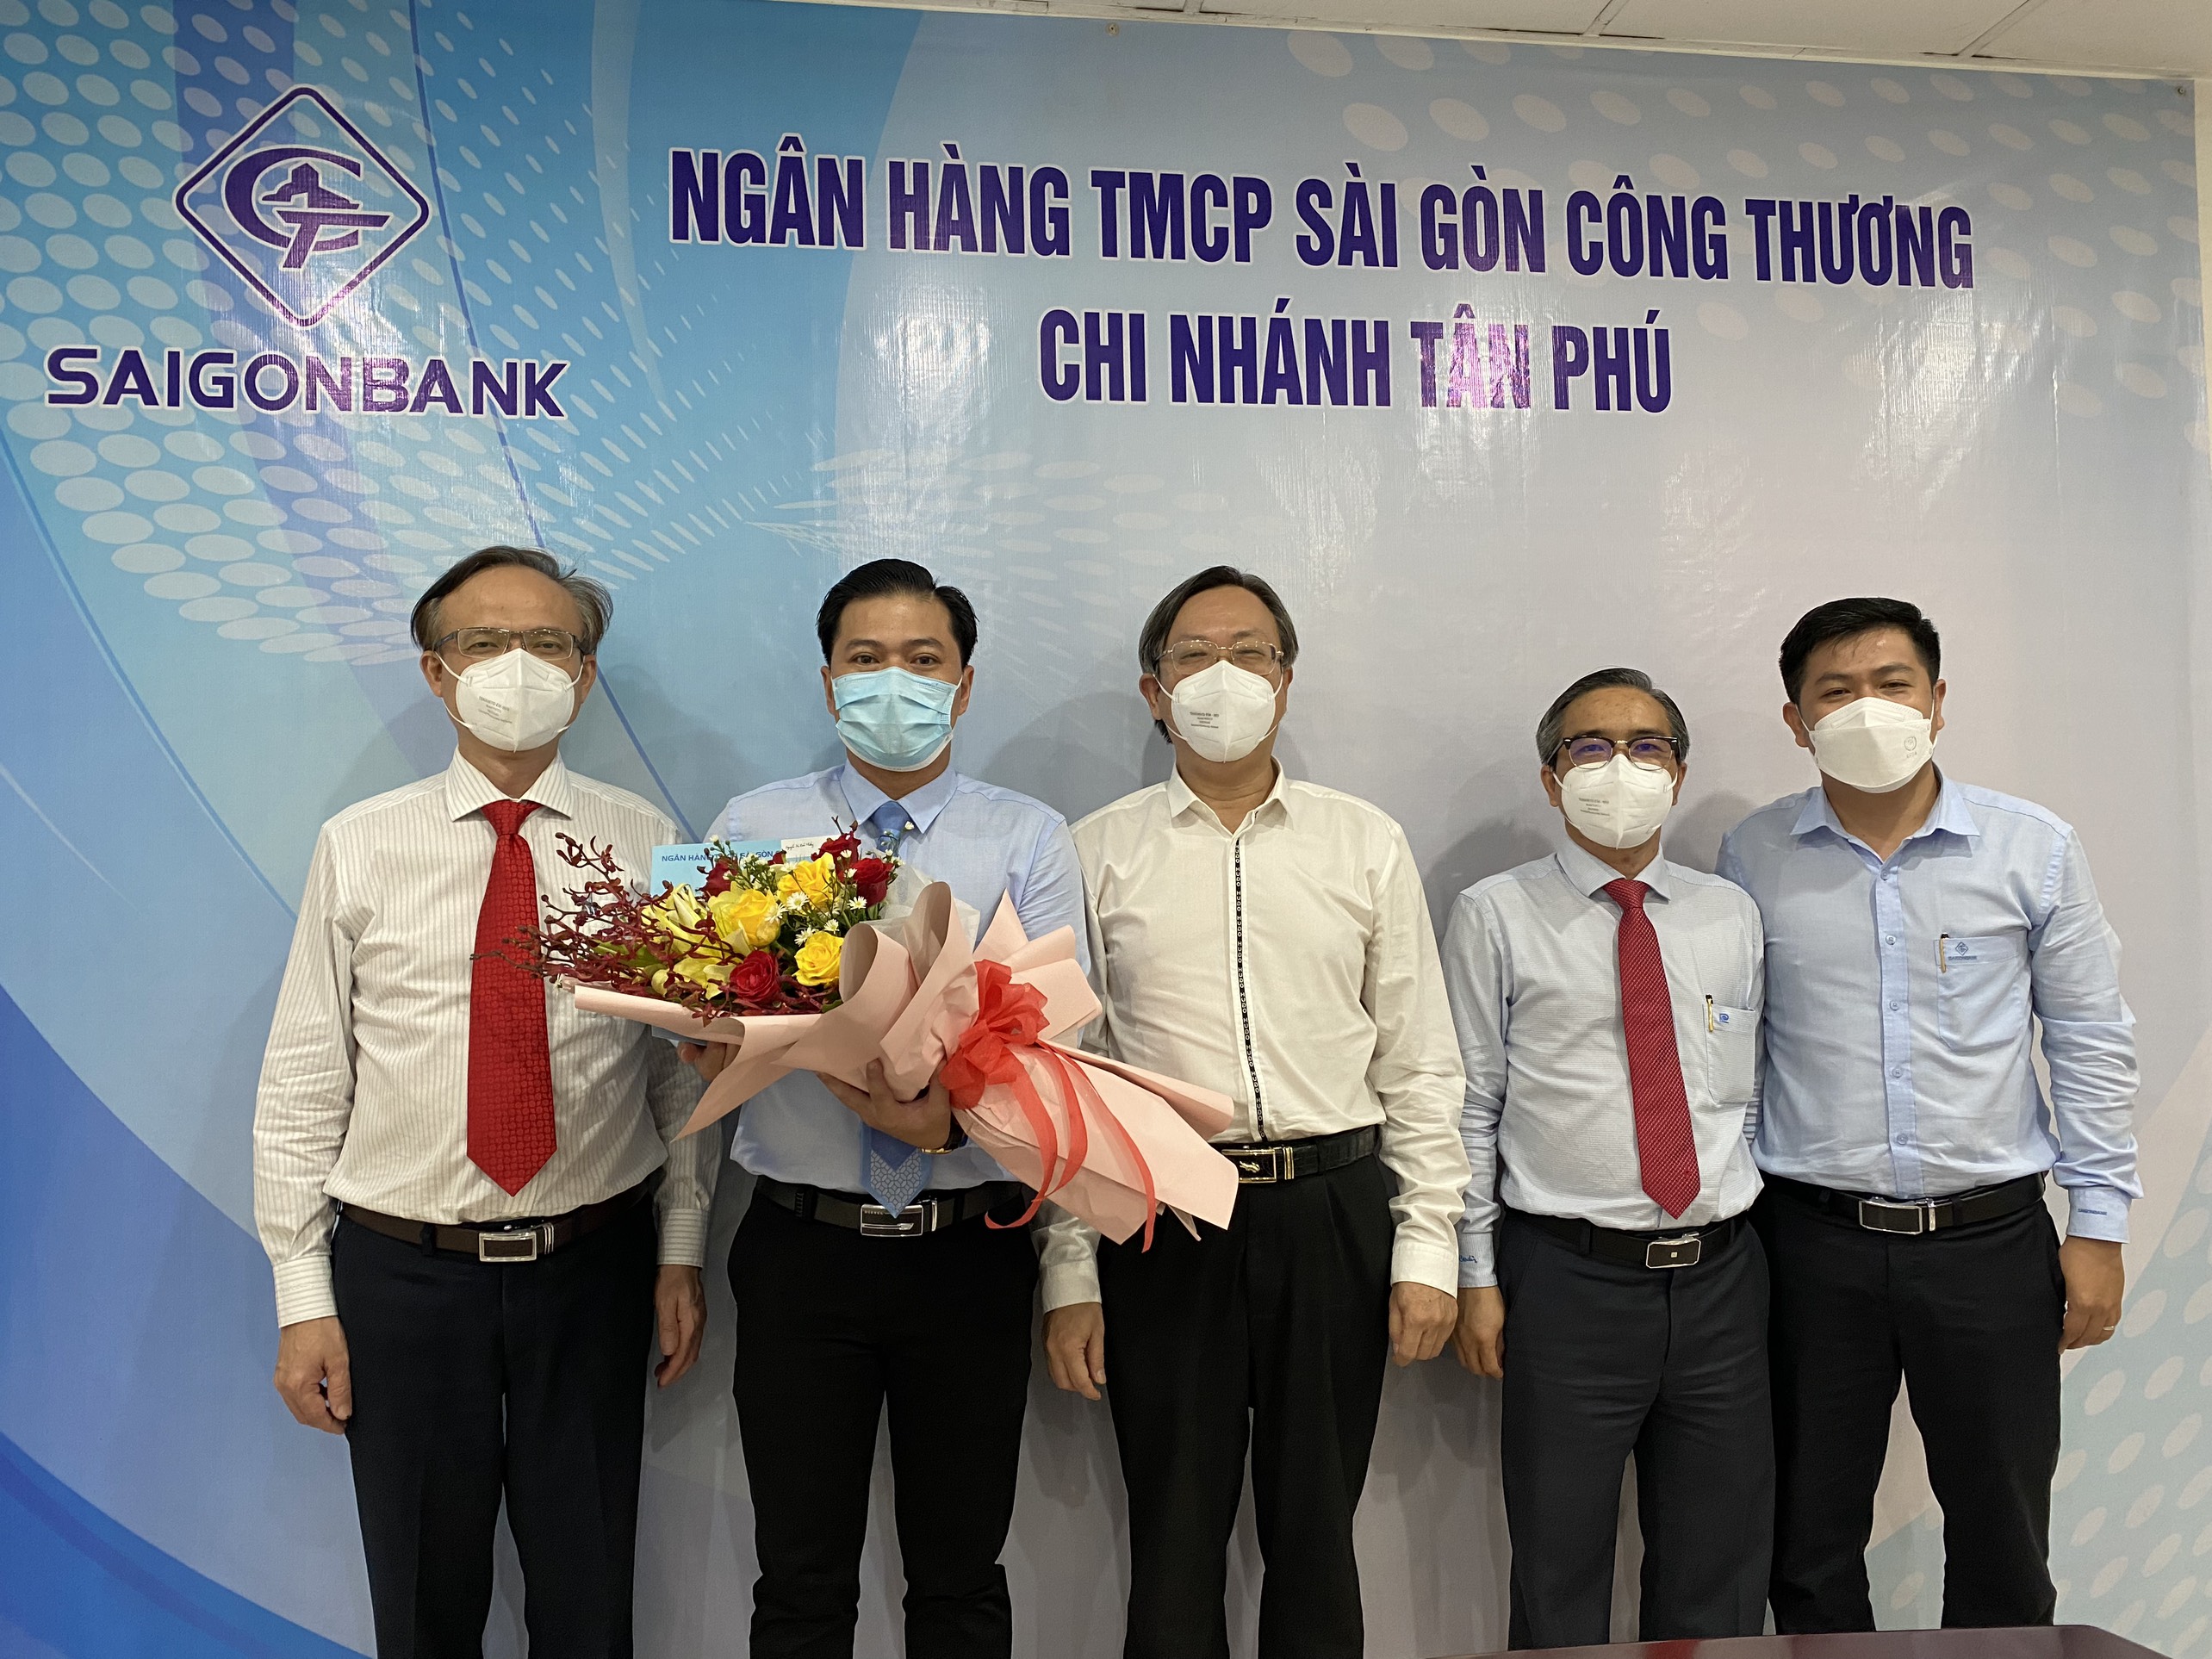 Ngân hàng TMCP Sài Gòn Công thương công bố quyết định bổ nhiệm nhân sự CN Tân Phú